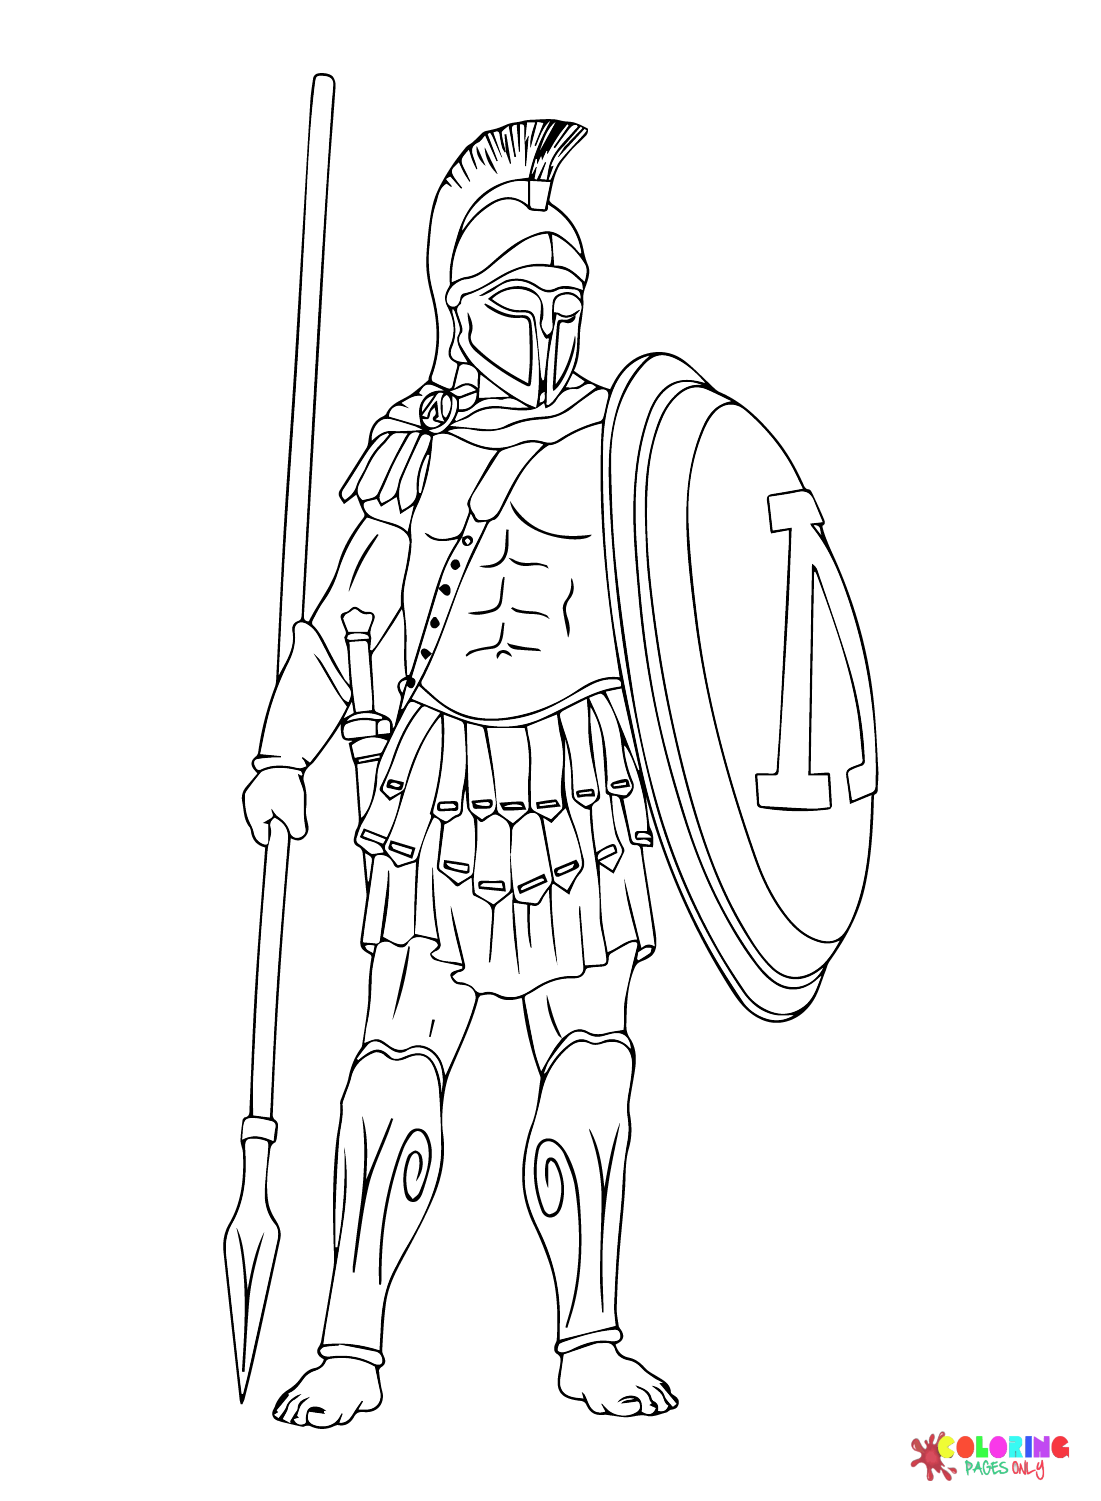 Vektor-Malvorlage eines antiken griechischen Kriegers mit Speeren und Schilden in den Händen